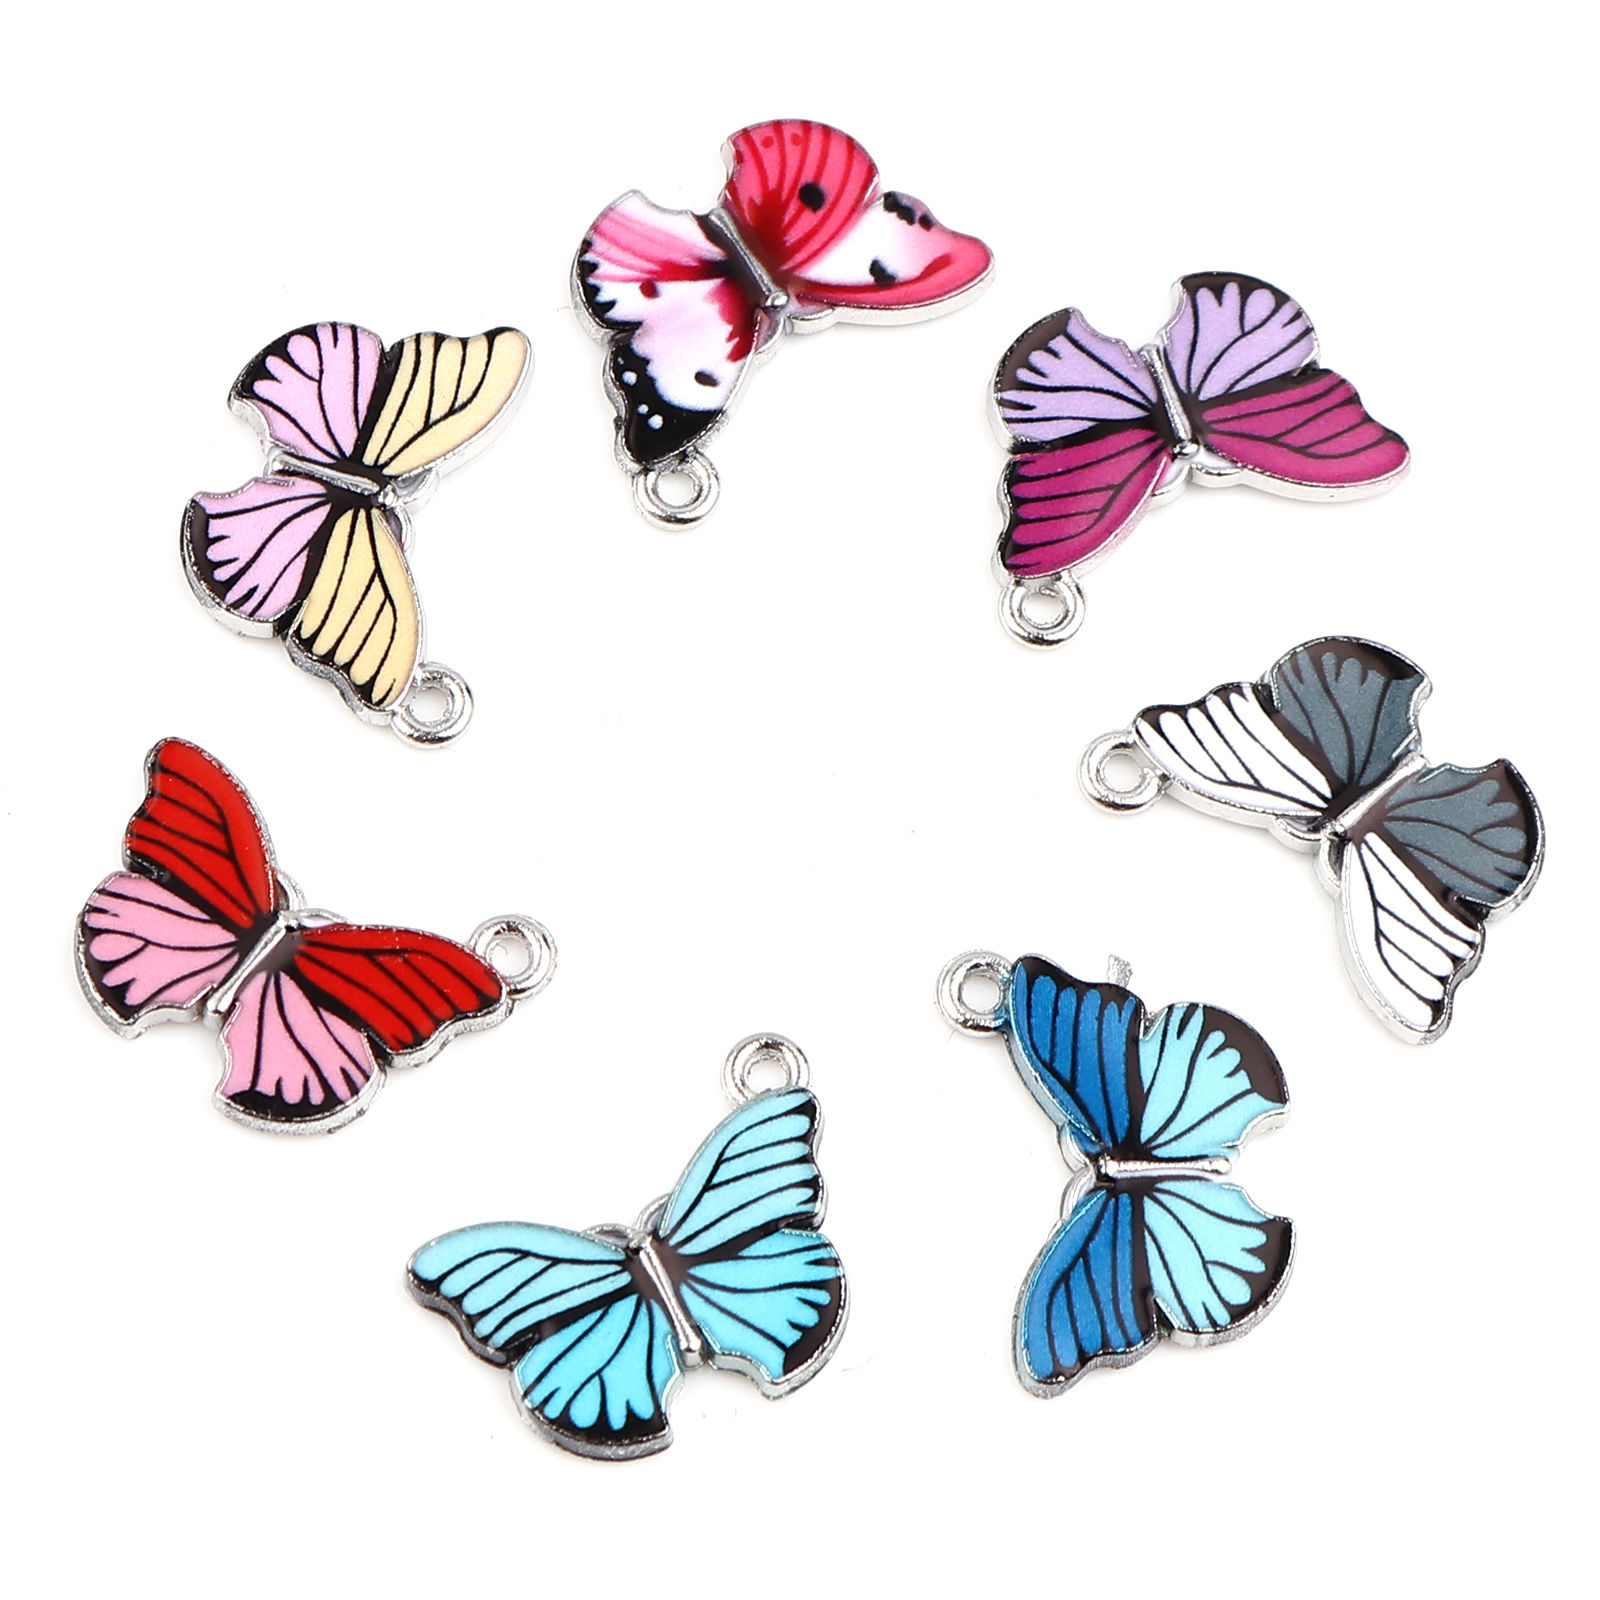 Bild von Zinklegierung Insekt Charms Schmetterling Silberfarbe Fuchsie Emaille 20mm x 15mm, 10 Stück